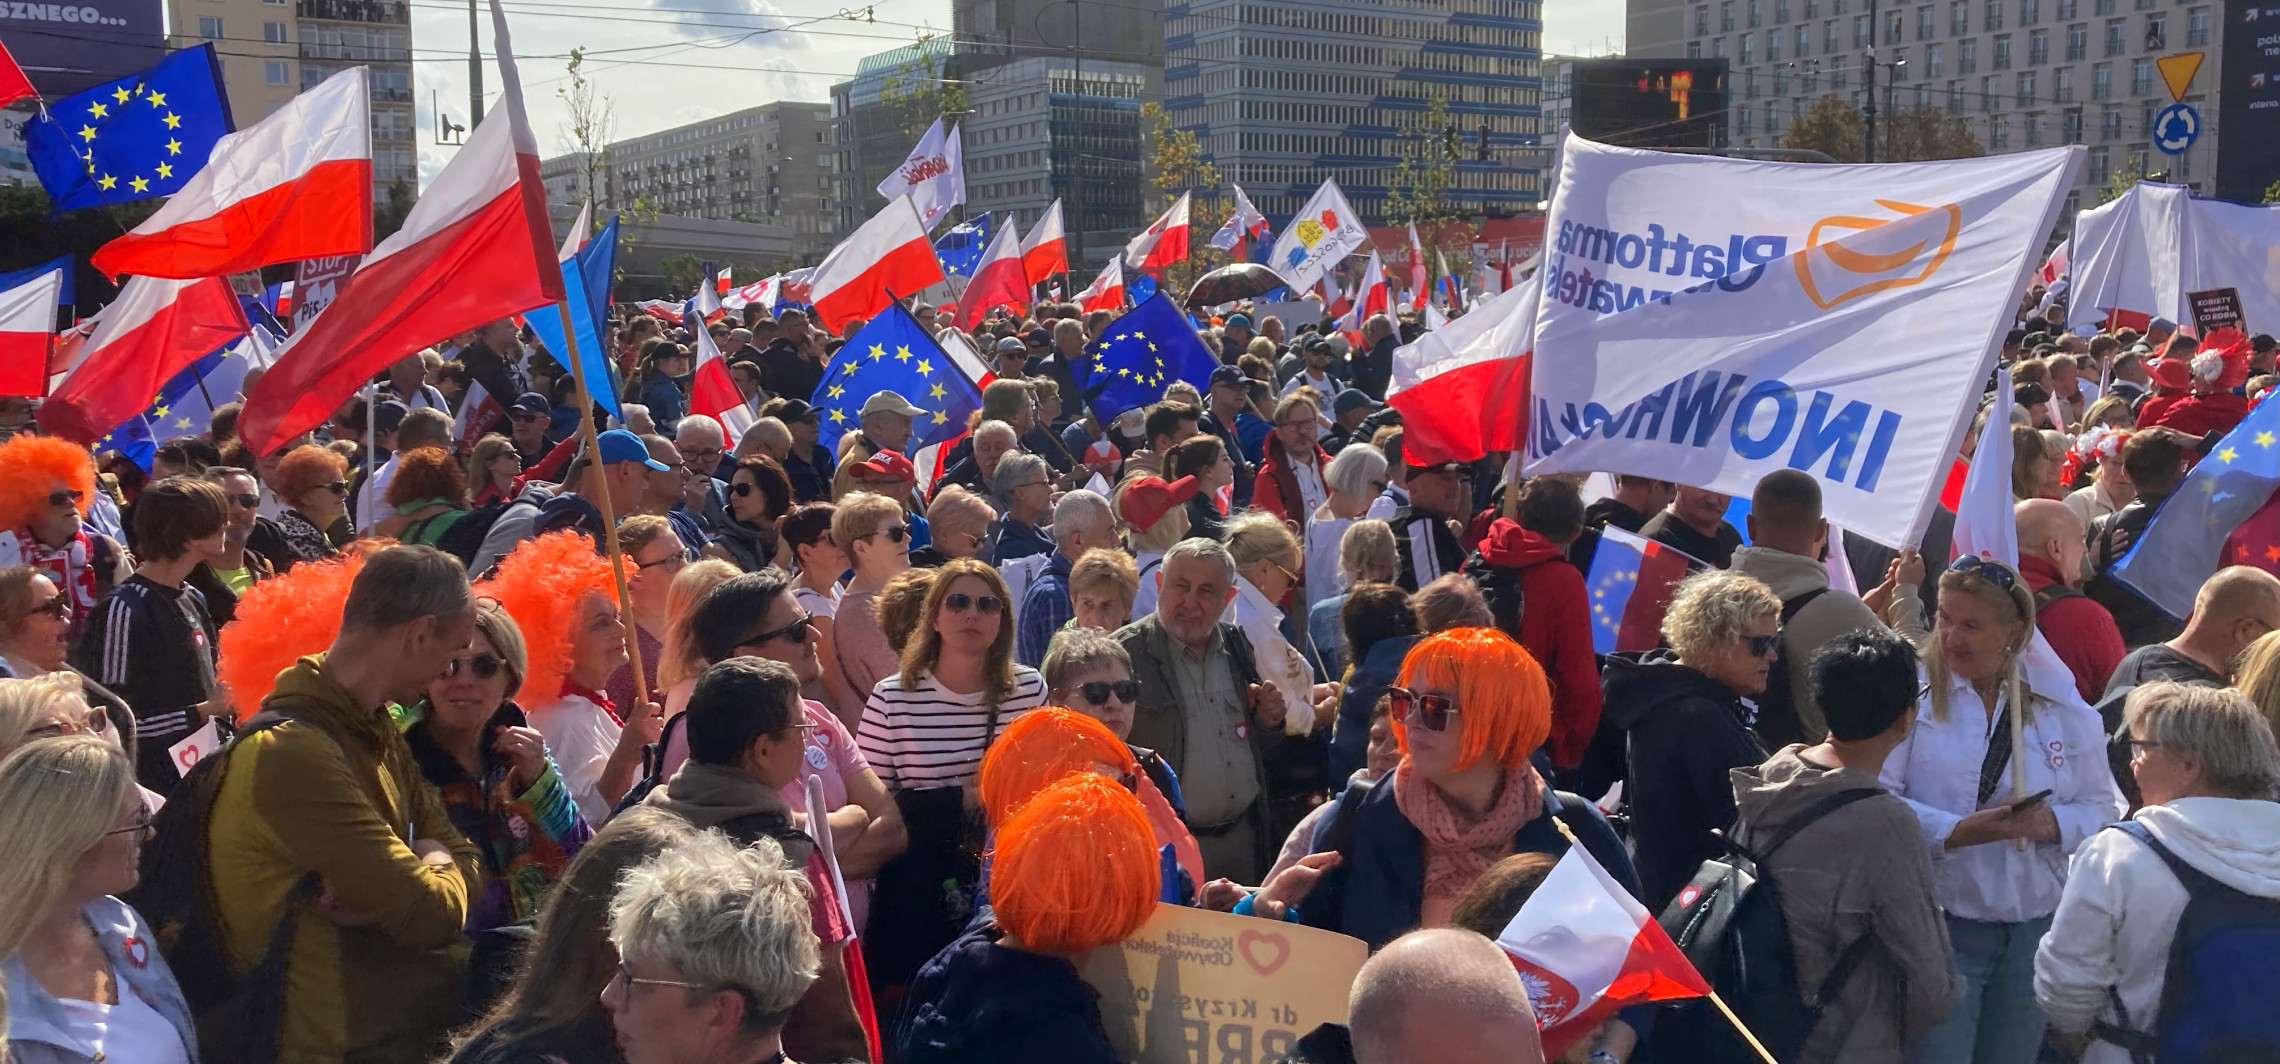 Inowrocław - W marszu miliona serc idą także inowrocławianie